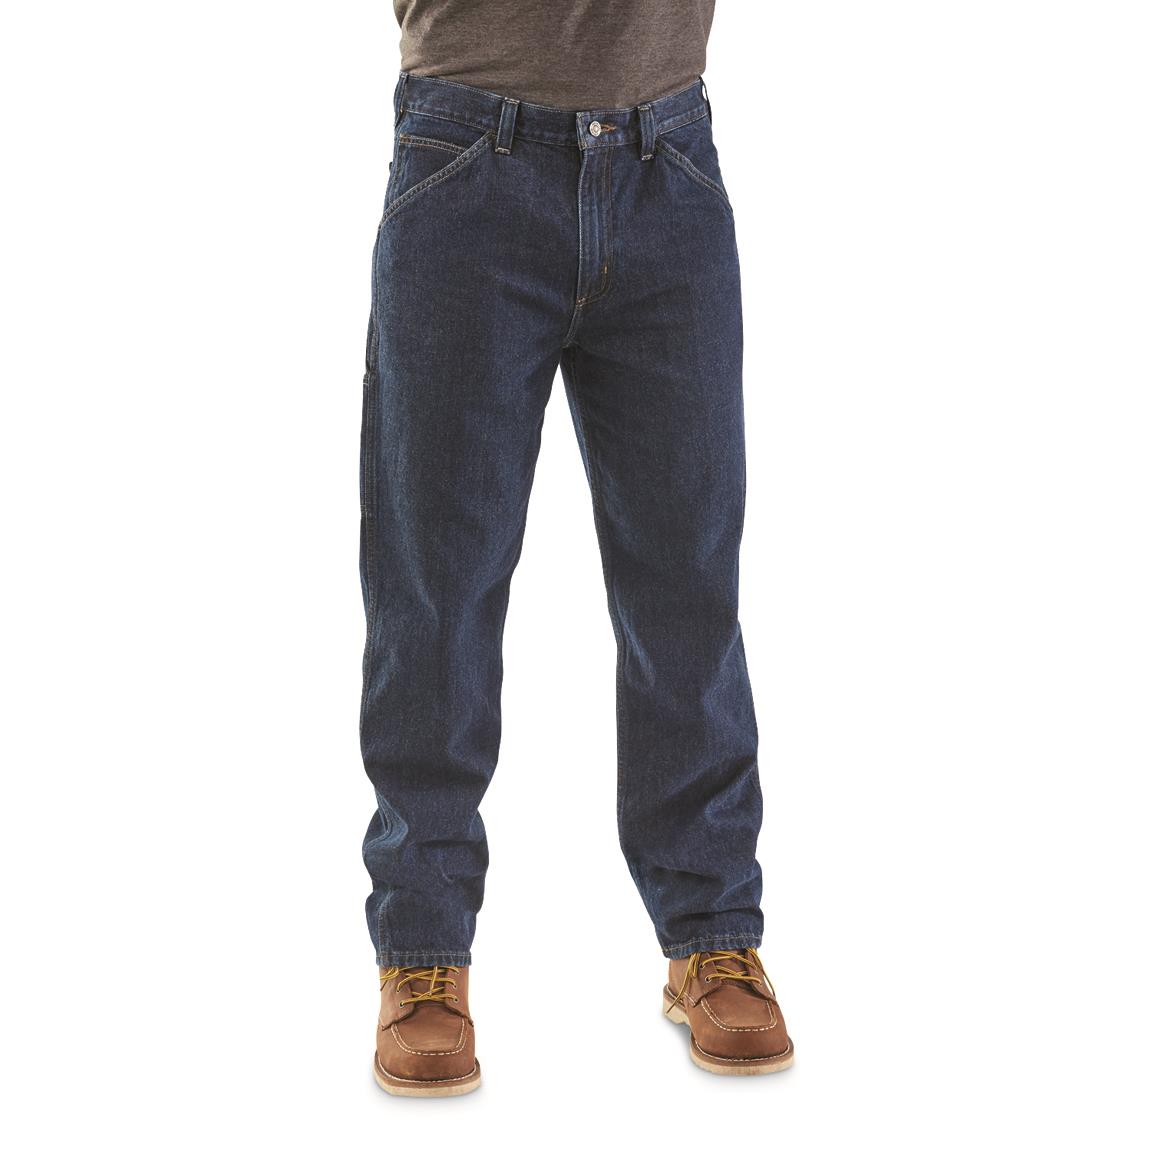 Guide Gear Men's Sportsman's Carpenter Jeans, Dark Stonewash